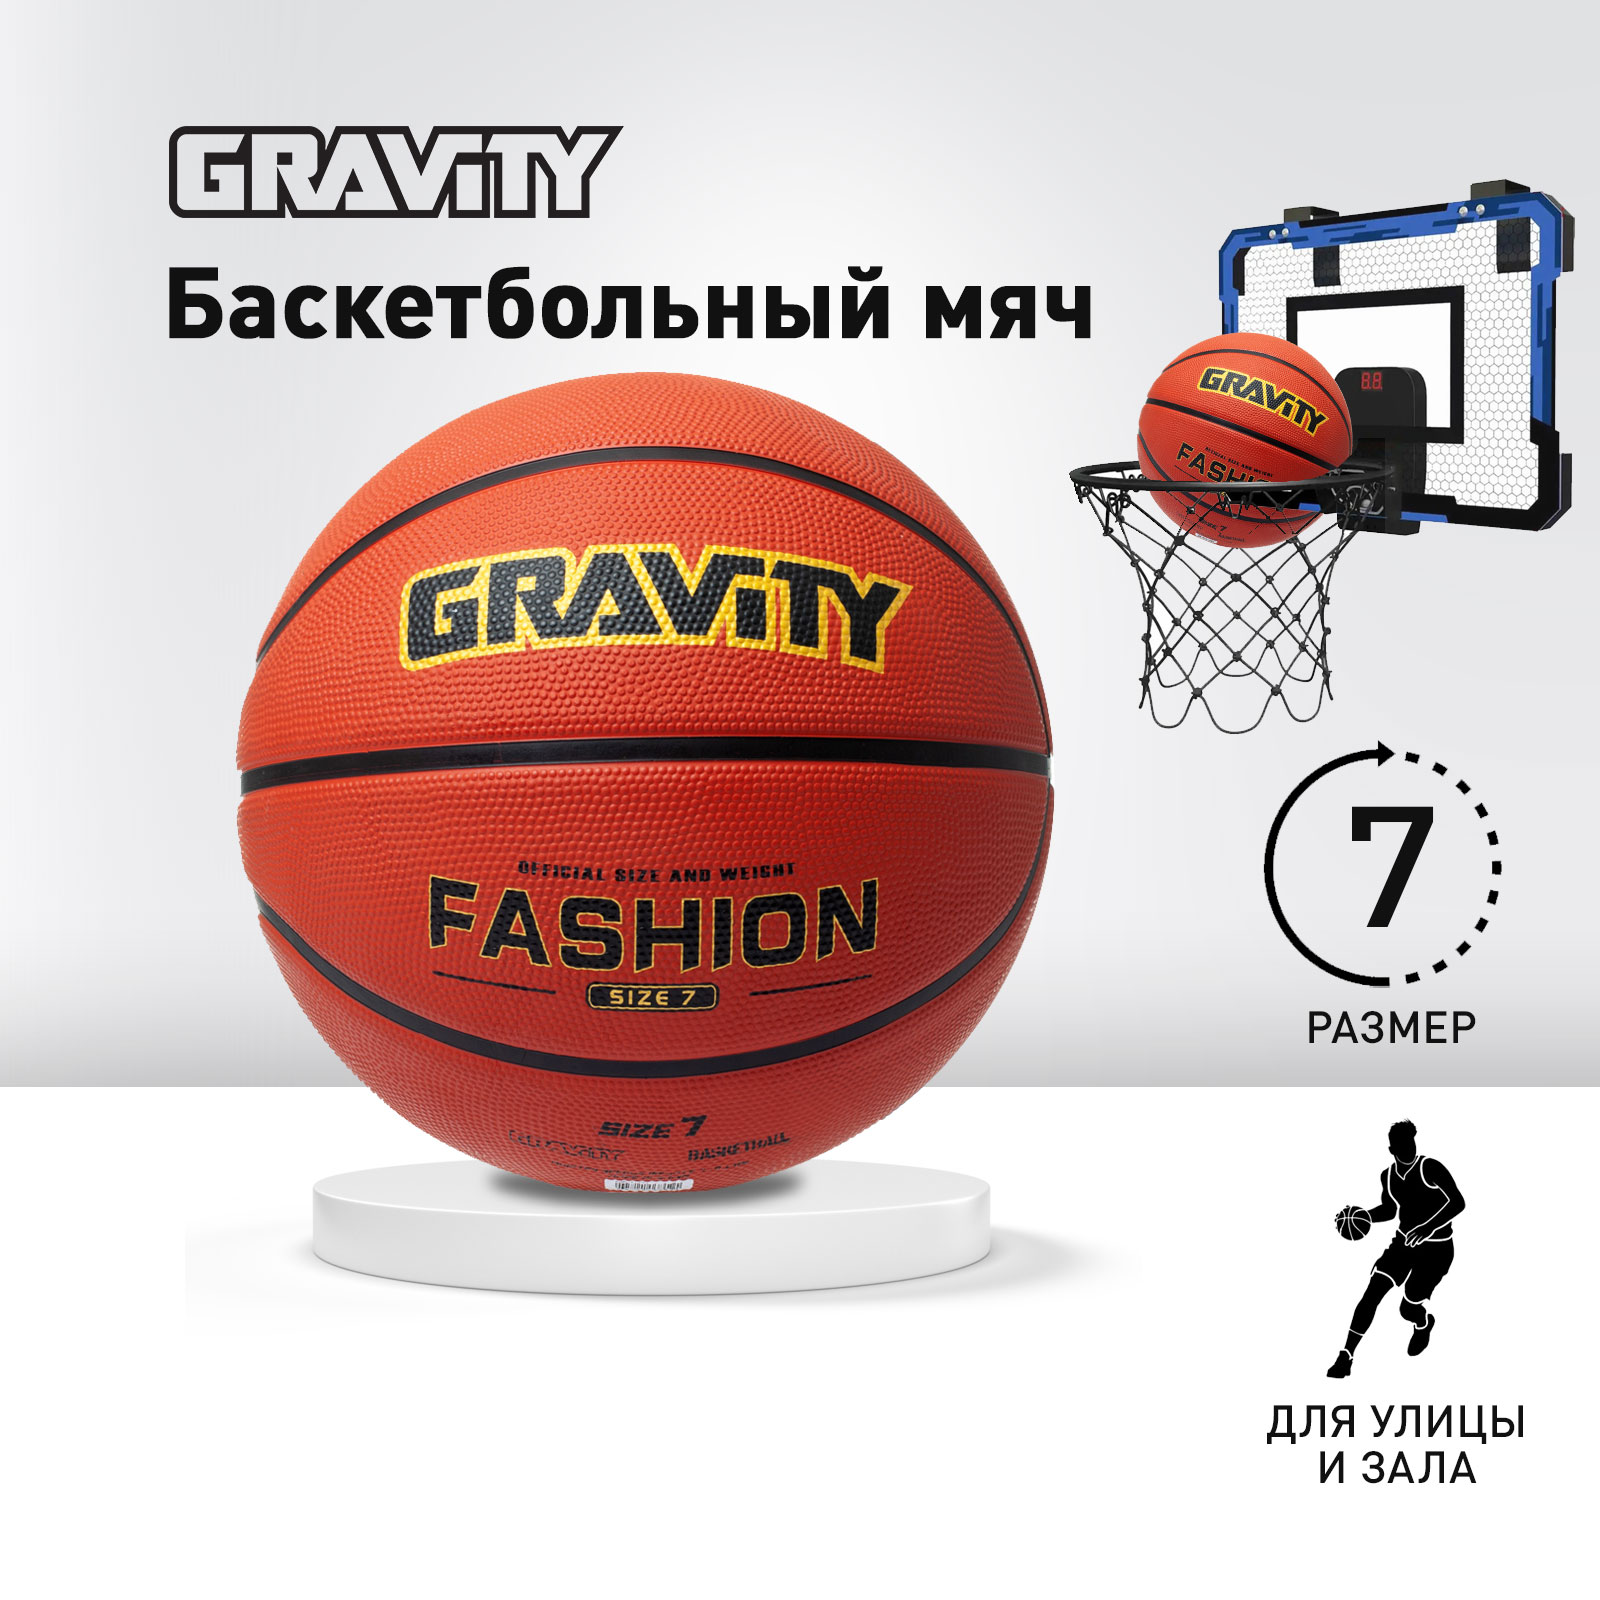 Баскетбольный мяч Gravity, резиновый, классический, размер 7